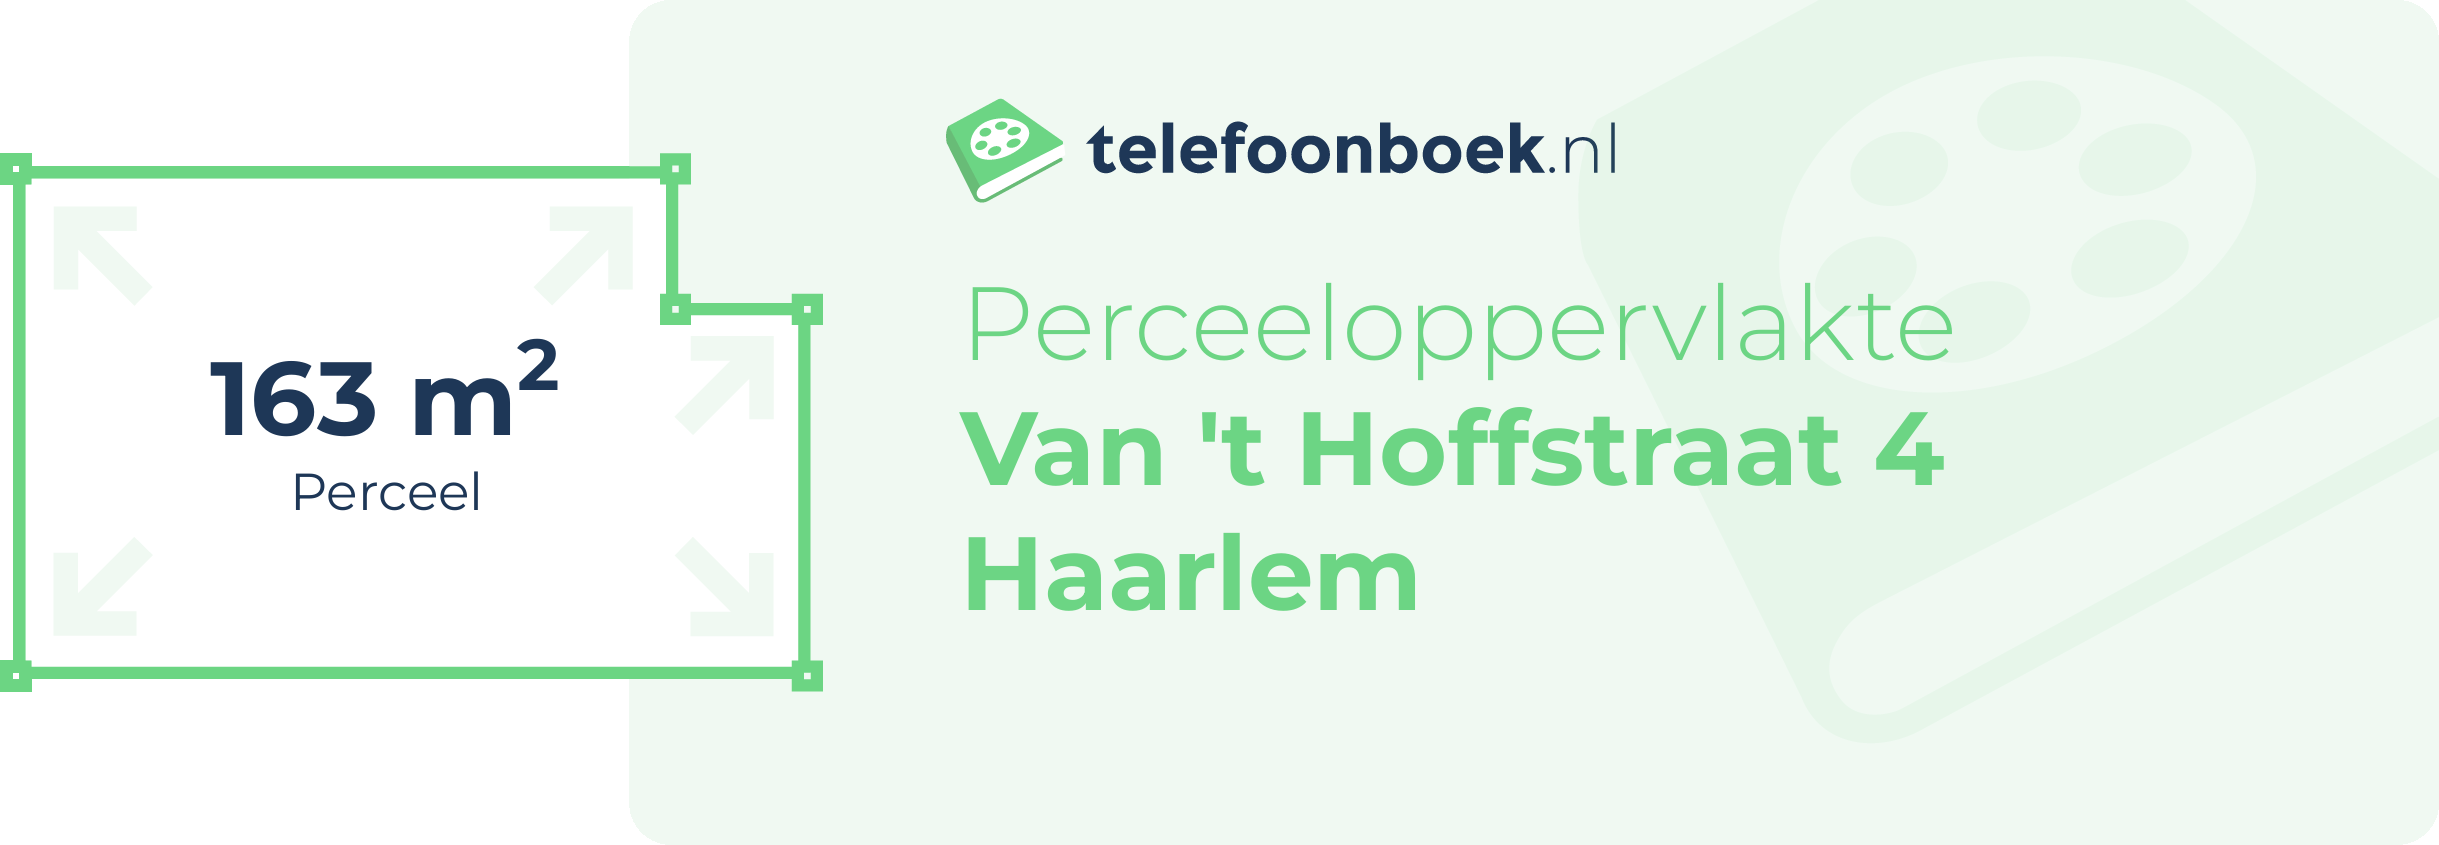 Perceeloppervlakte Van 't Hoffstraat 4 Haarlem